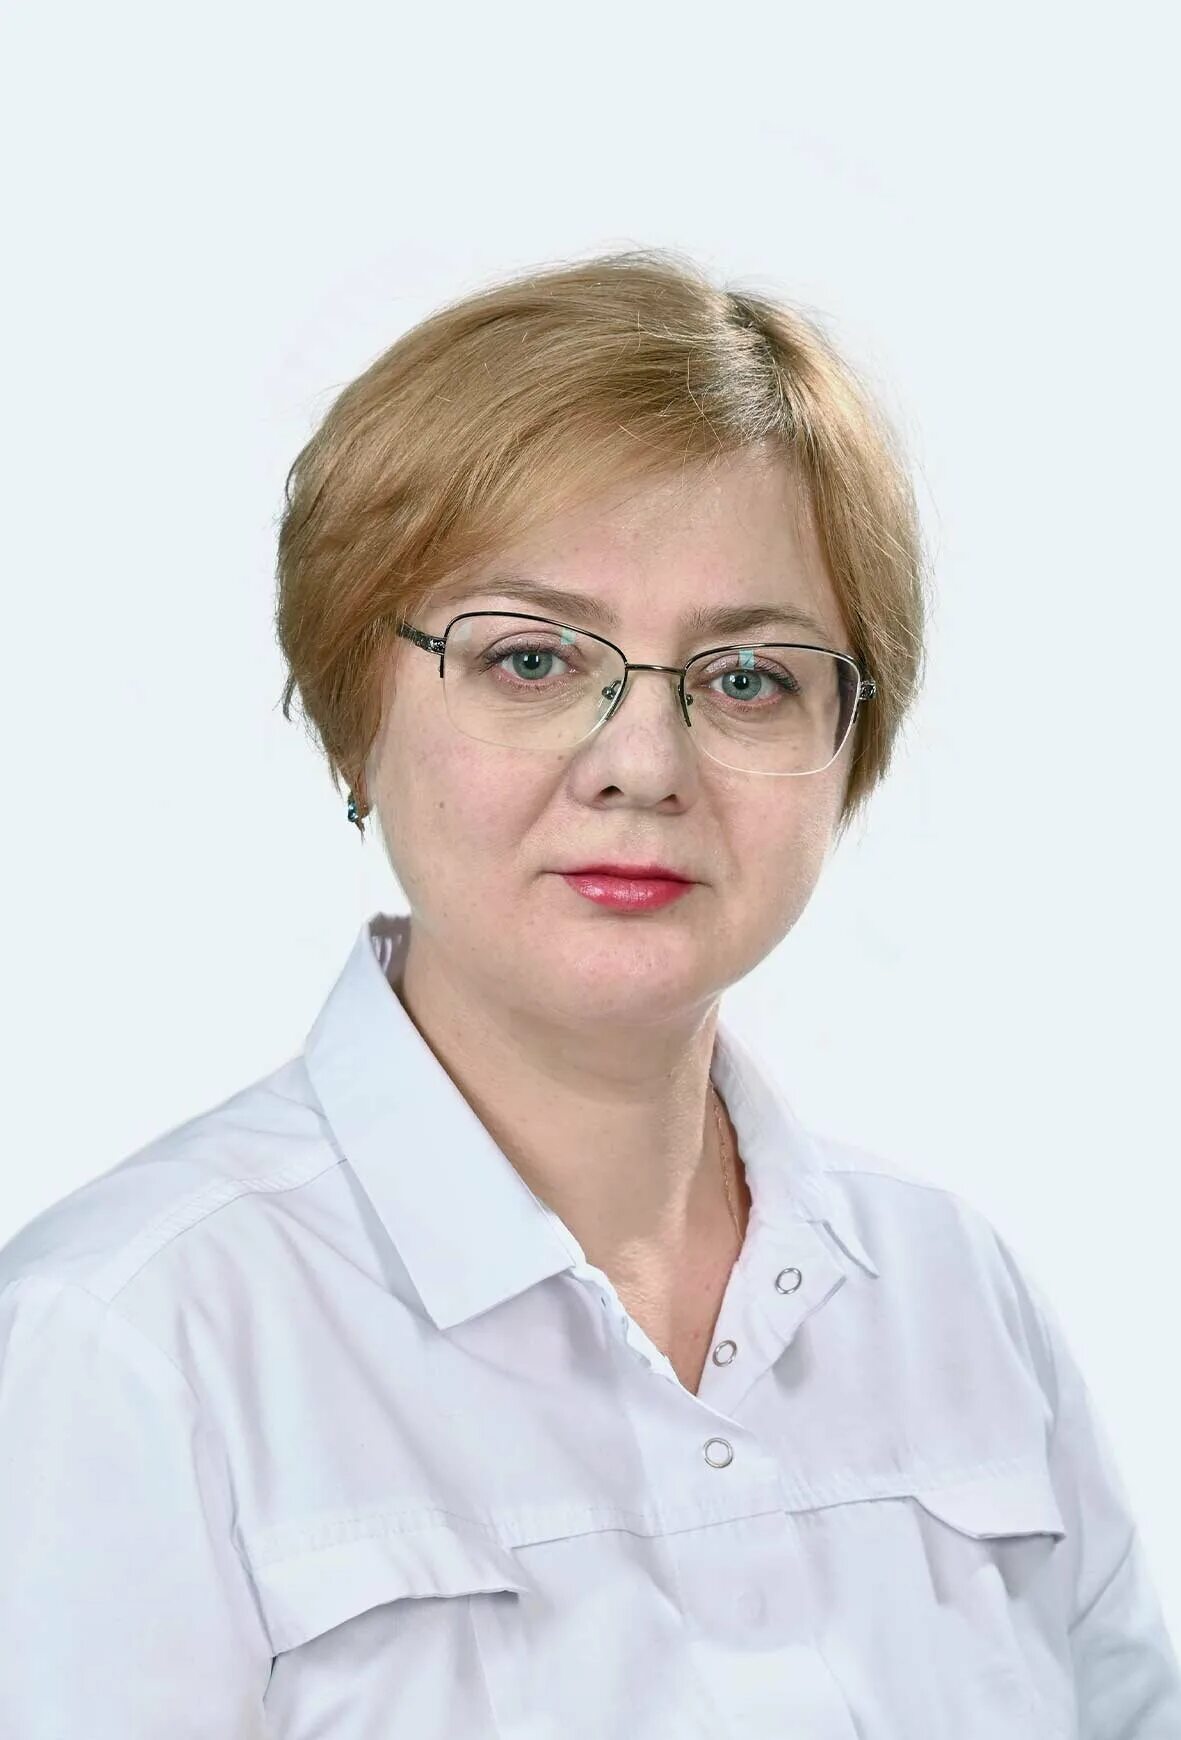 Воронцова невролог Уфа. Невропатолог уфа